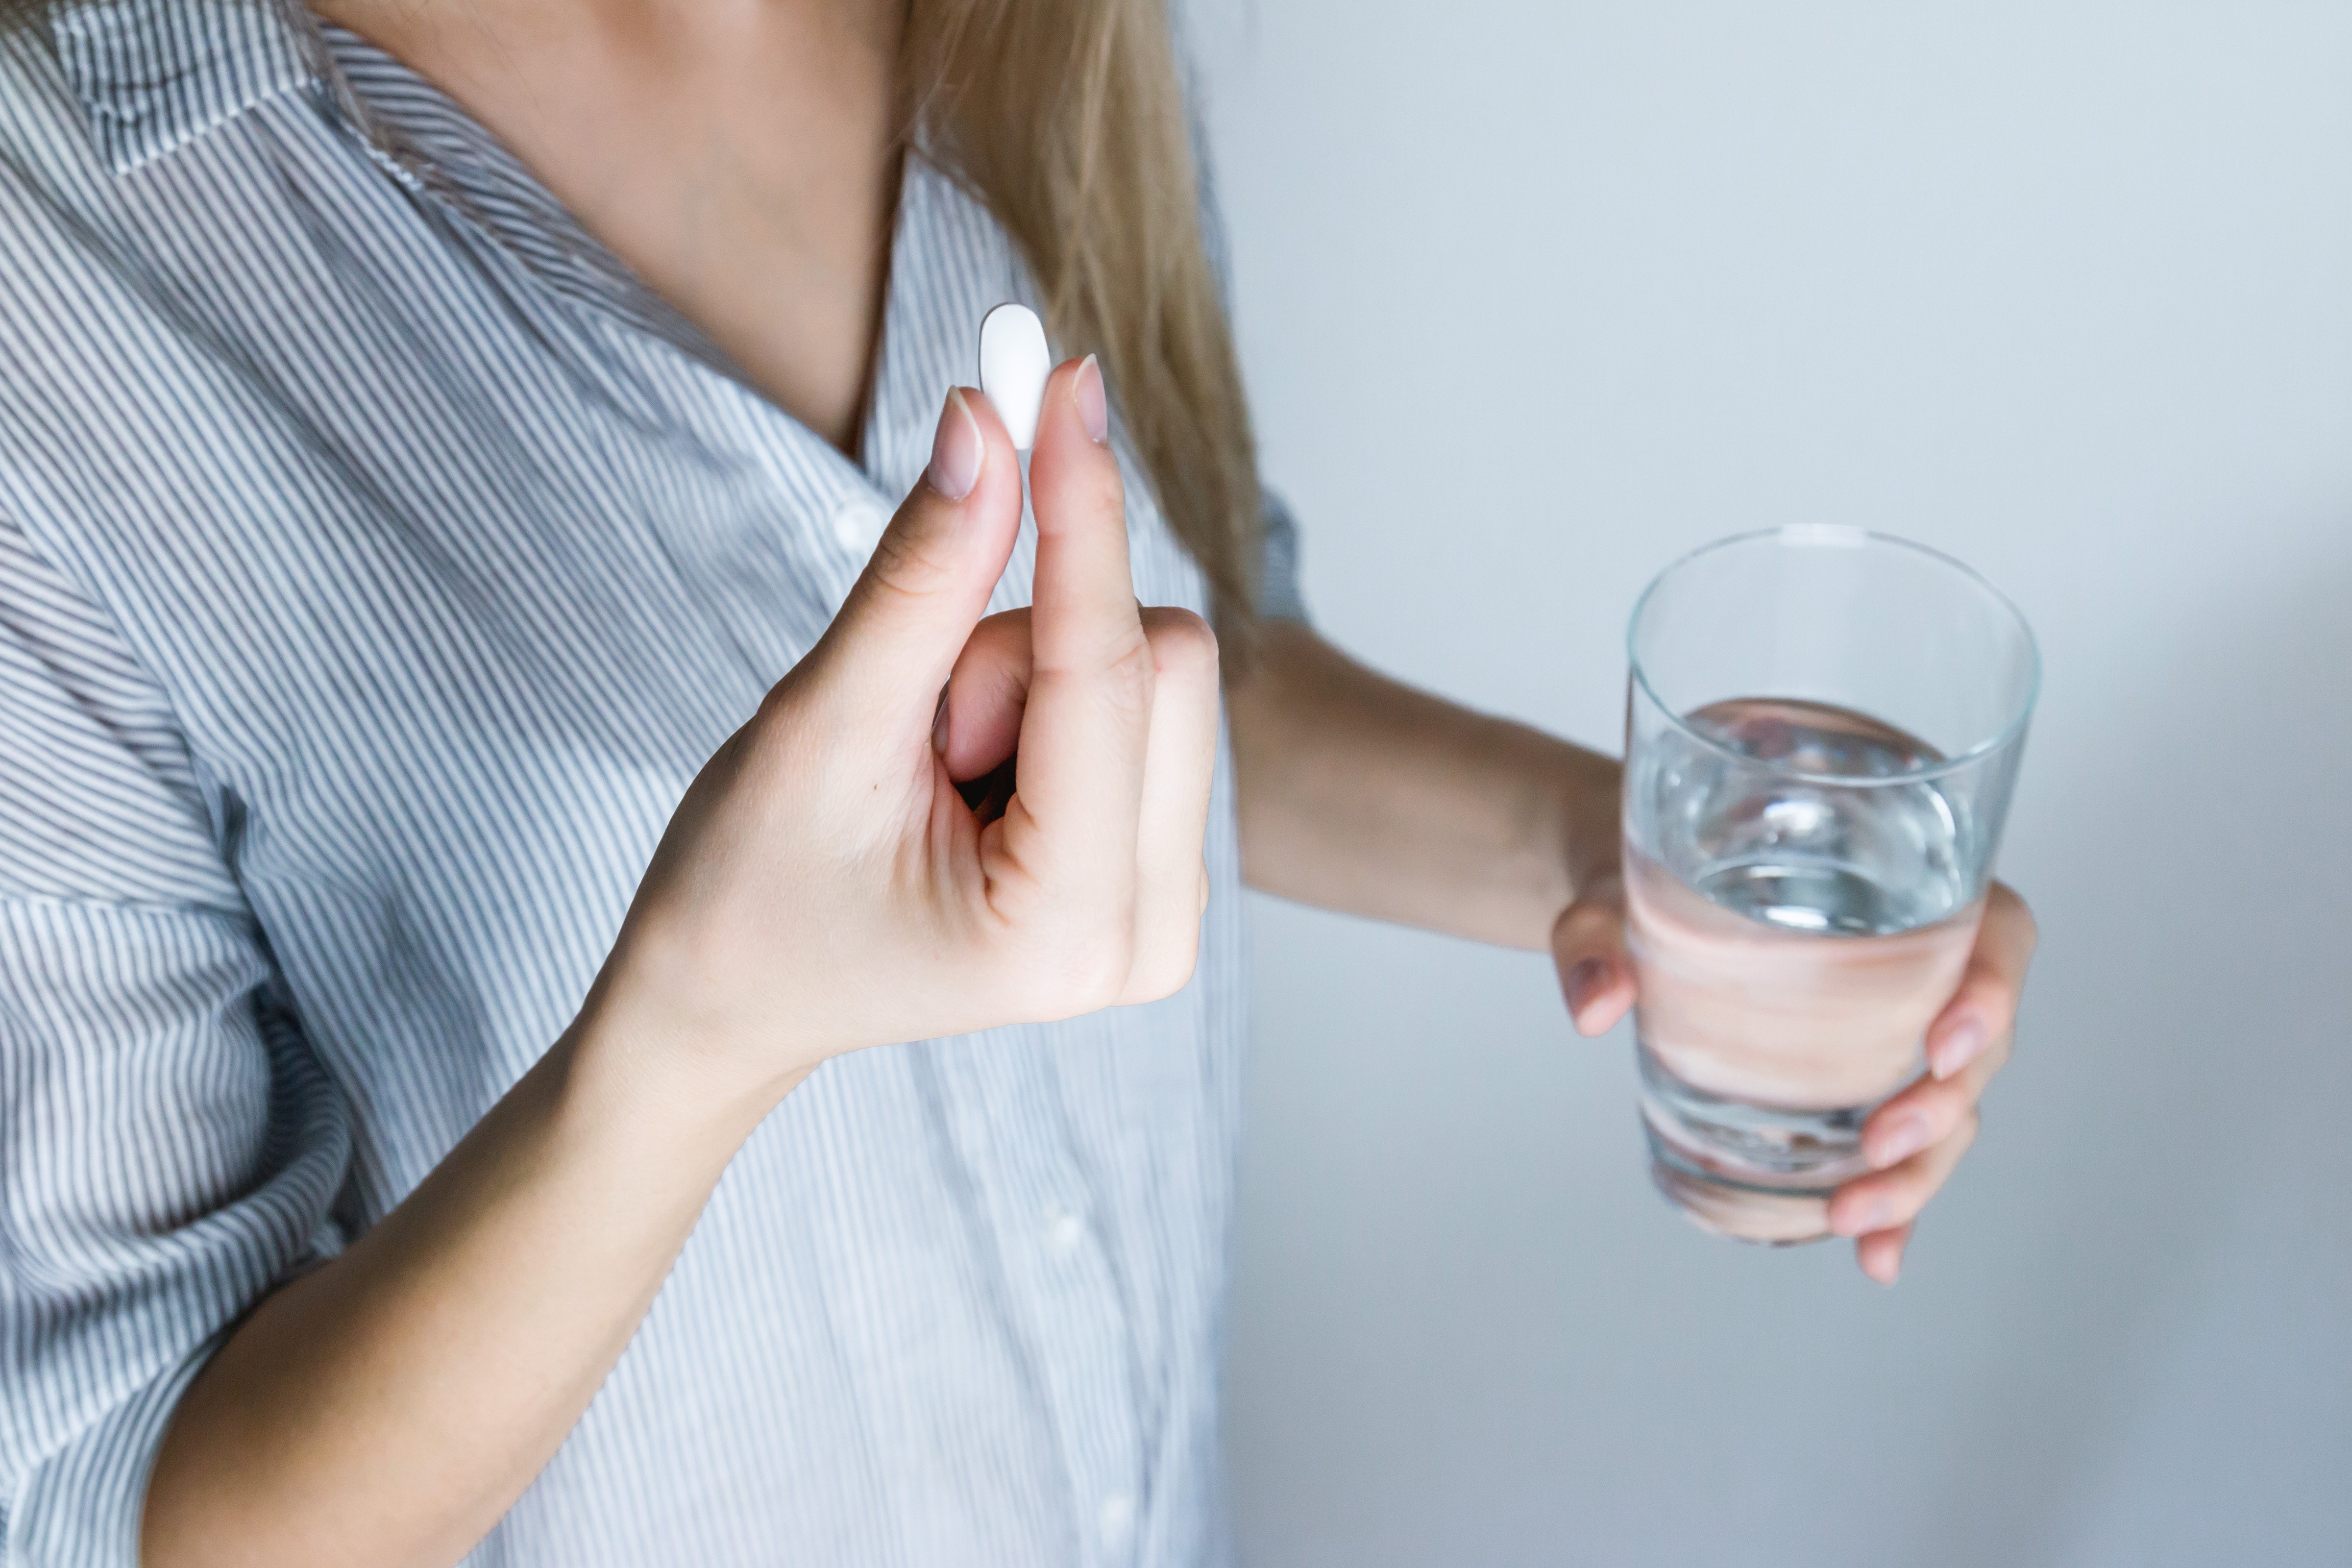 Pílulas anticoncepcionais e outras drogas podem fazer parte do tratamento da endometriose. (Foto: JESHOOTS.com/Pexels)